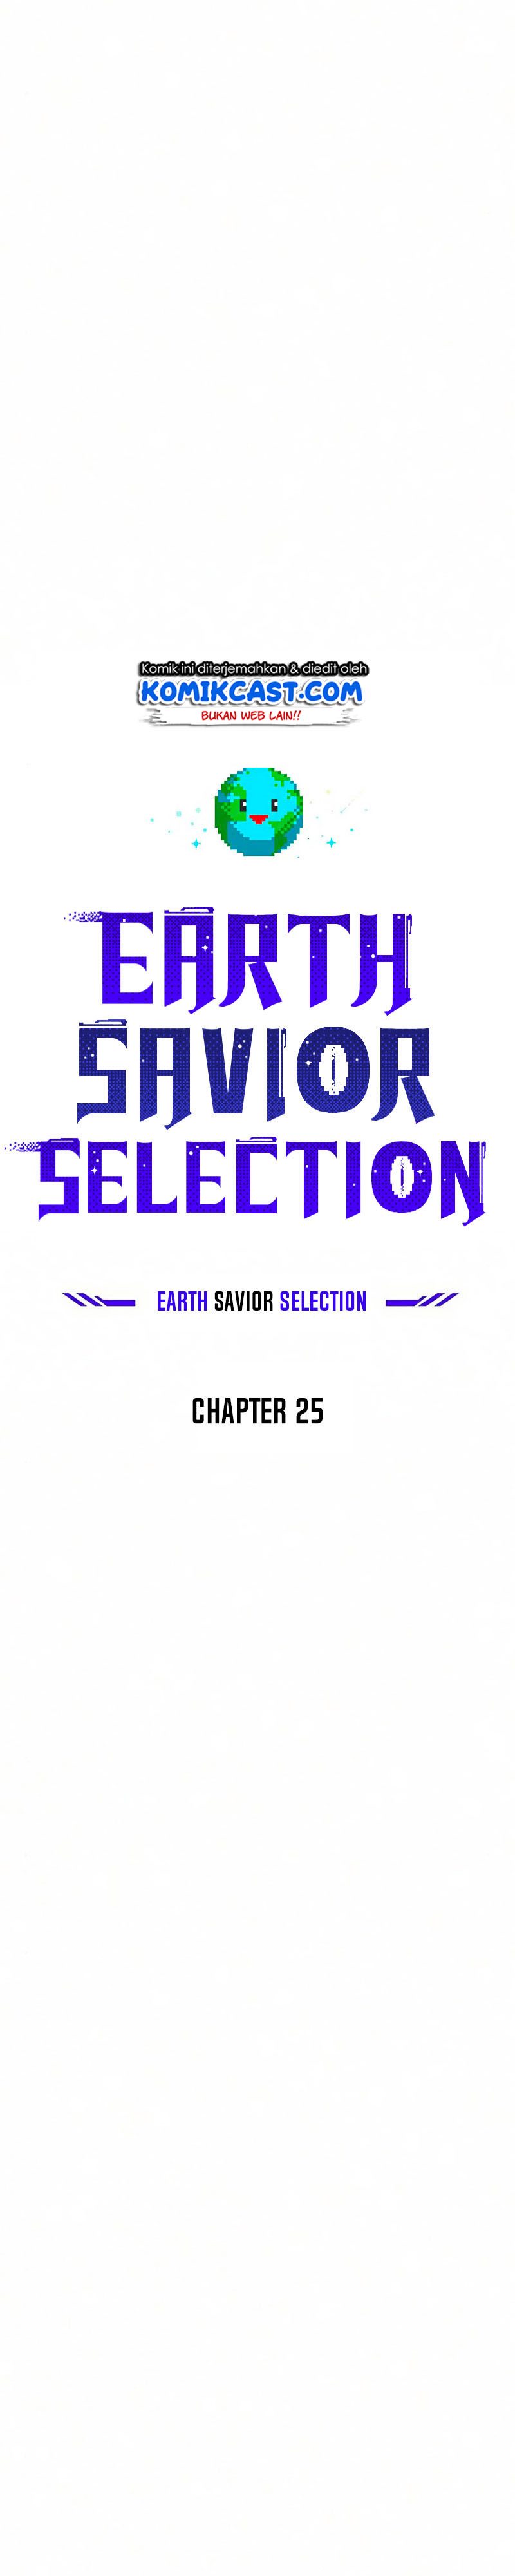 The Earth Savior Selection Chapter 25